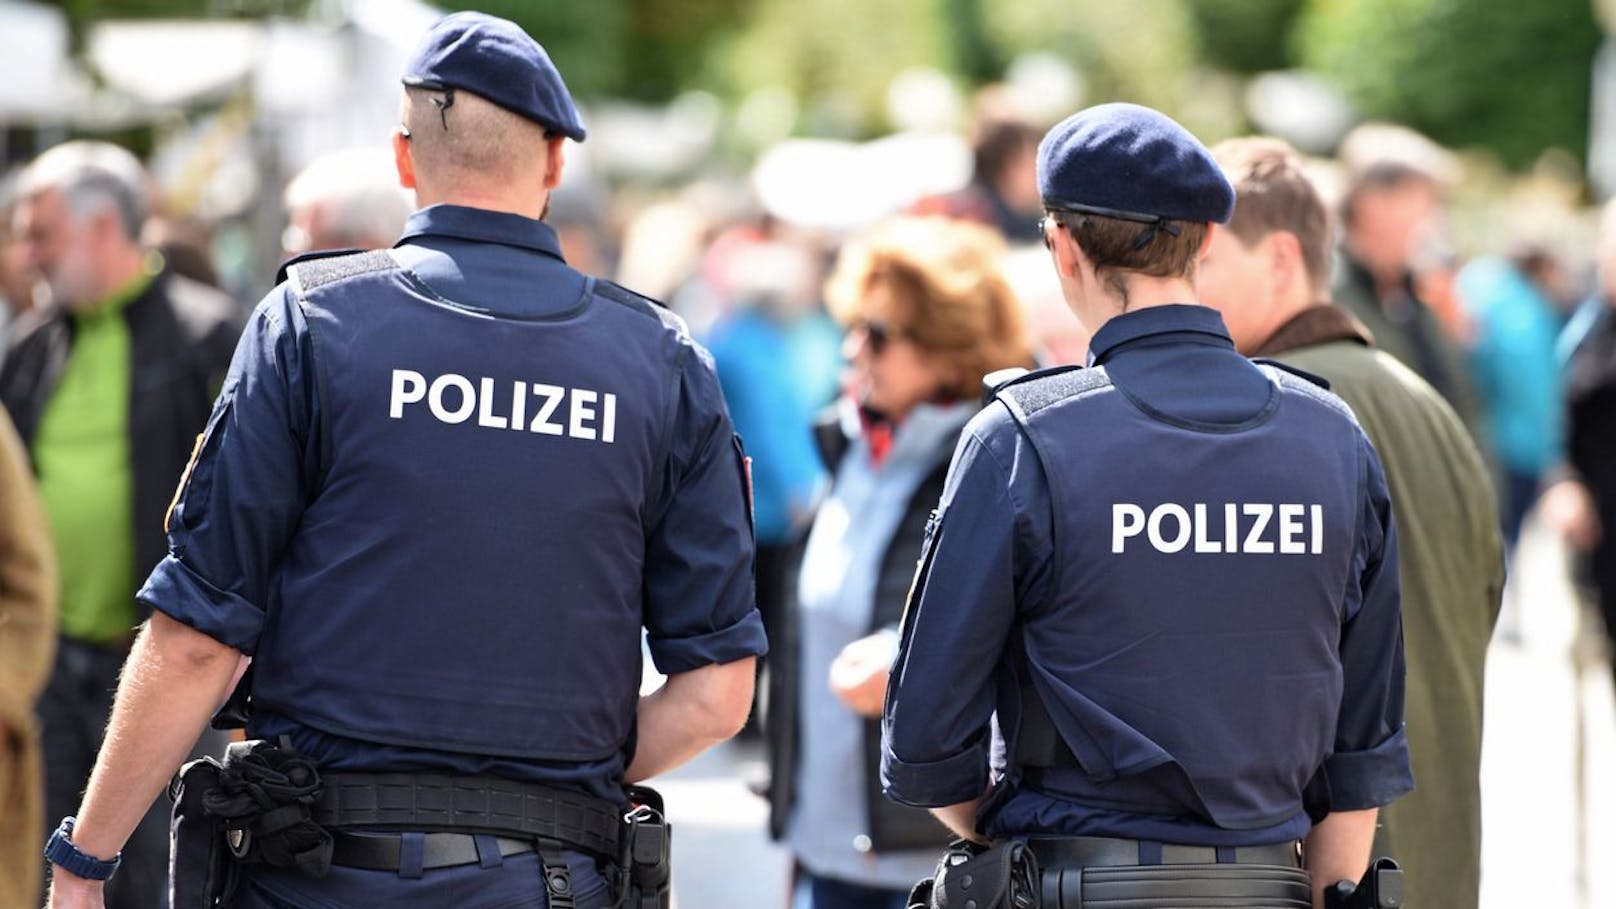 "Schwulsein ist Krankheit": 8.000 € Strafe für Polizist